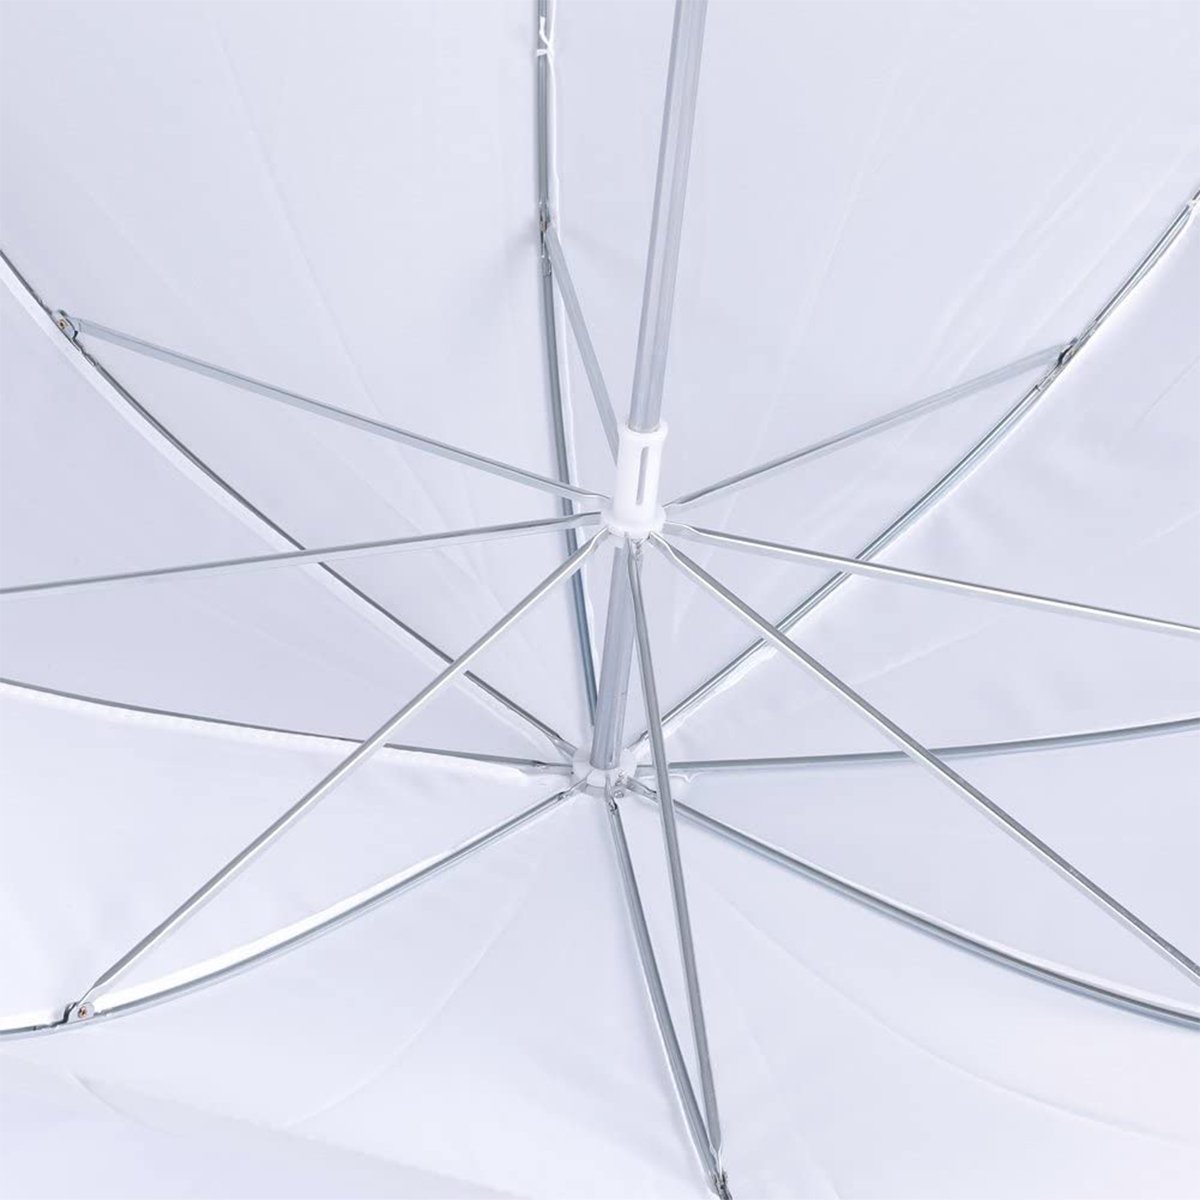 GVM Umbrella for P80S/G100W Series LED Lights (31